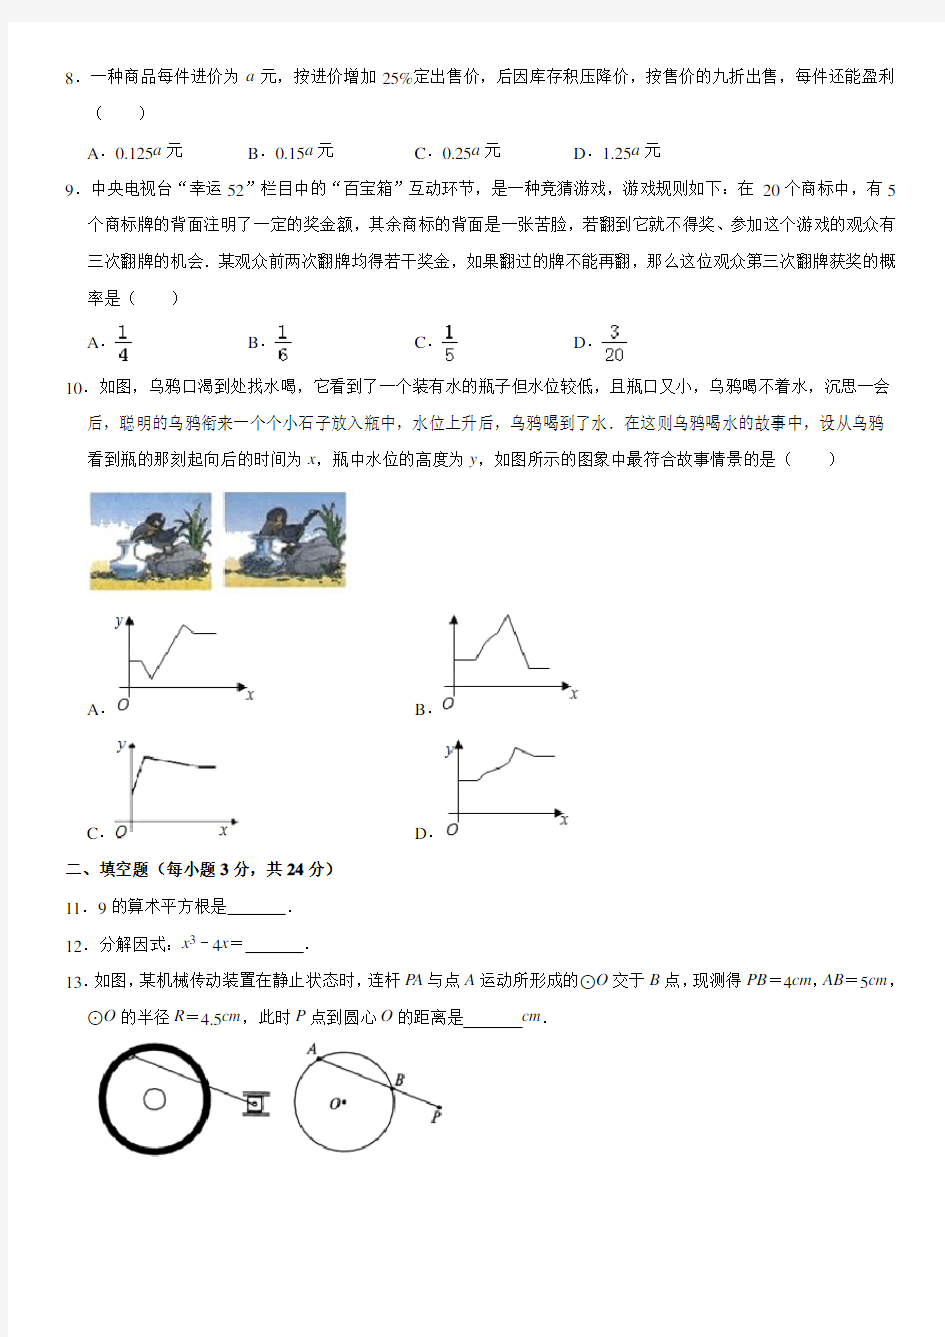 2019年广东省中考数学模拟试题